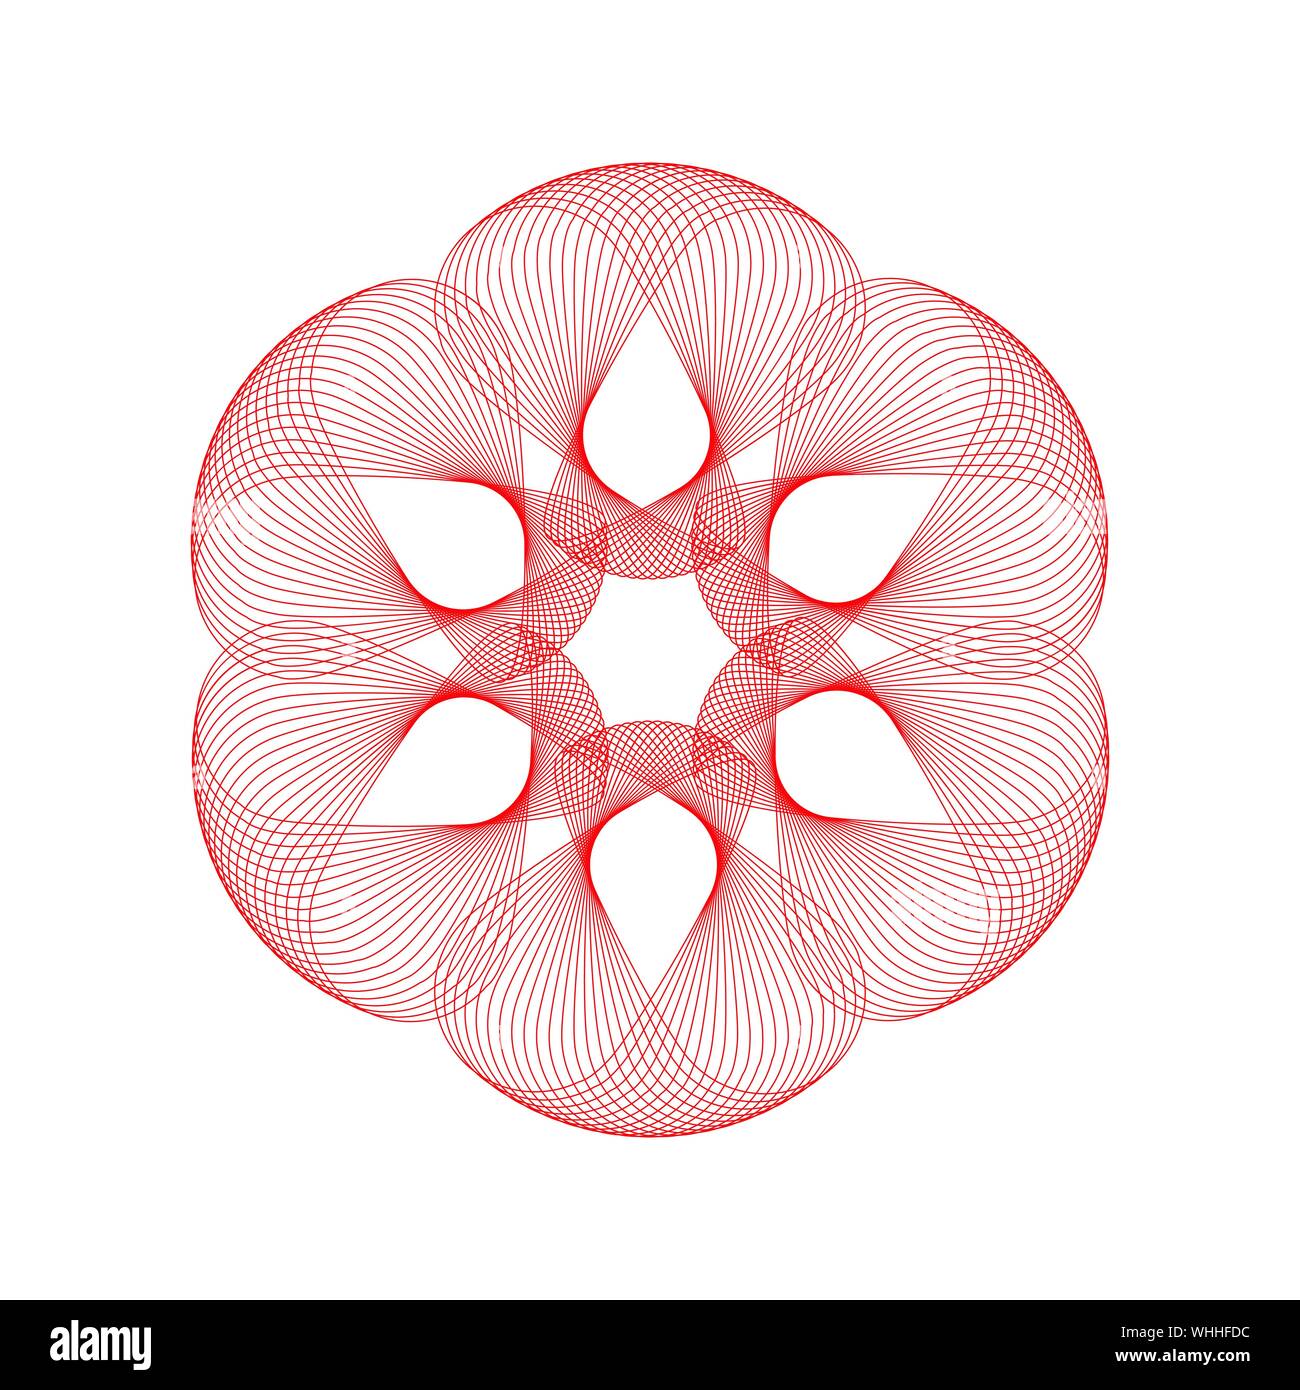 Abstract fiore geometrica frattale simbolo vettore Logo grafico del modello di progettazione Illustrazione Vettoriale